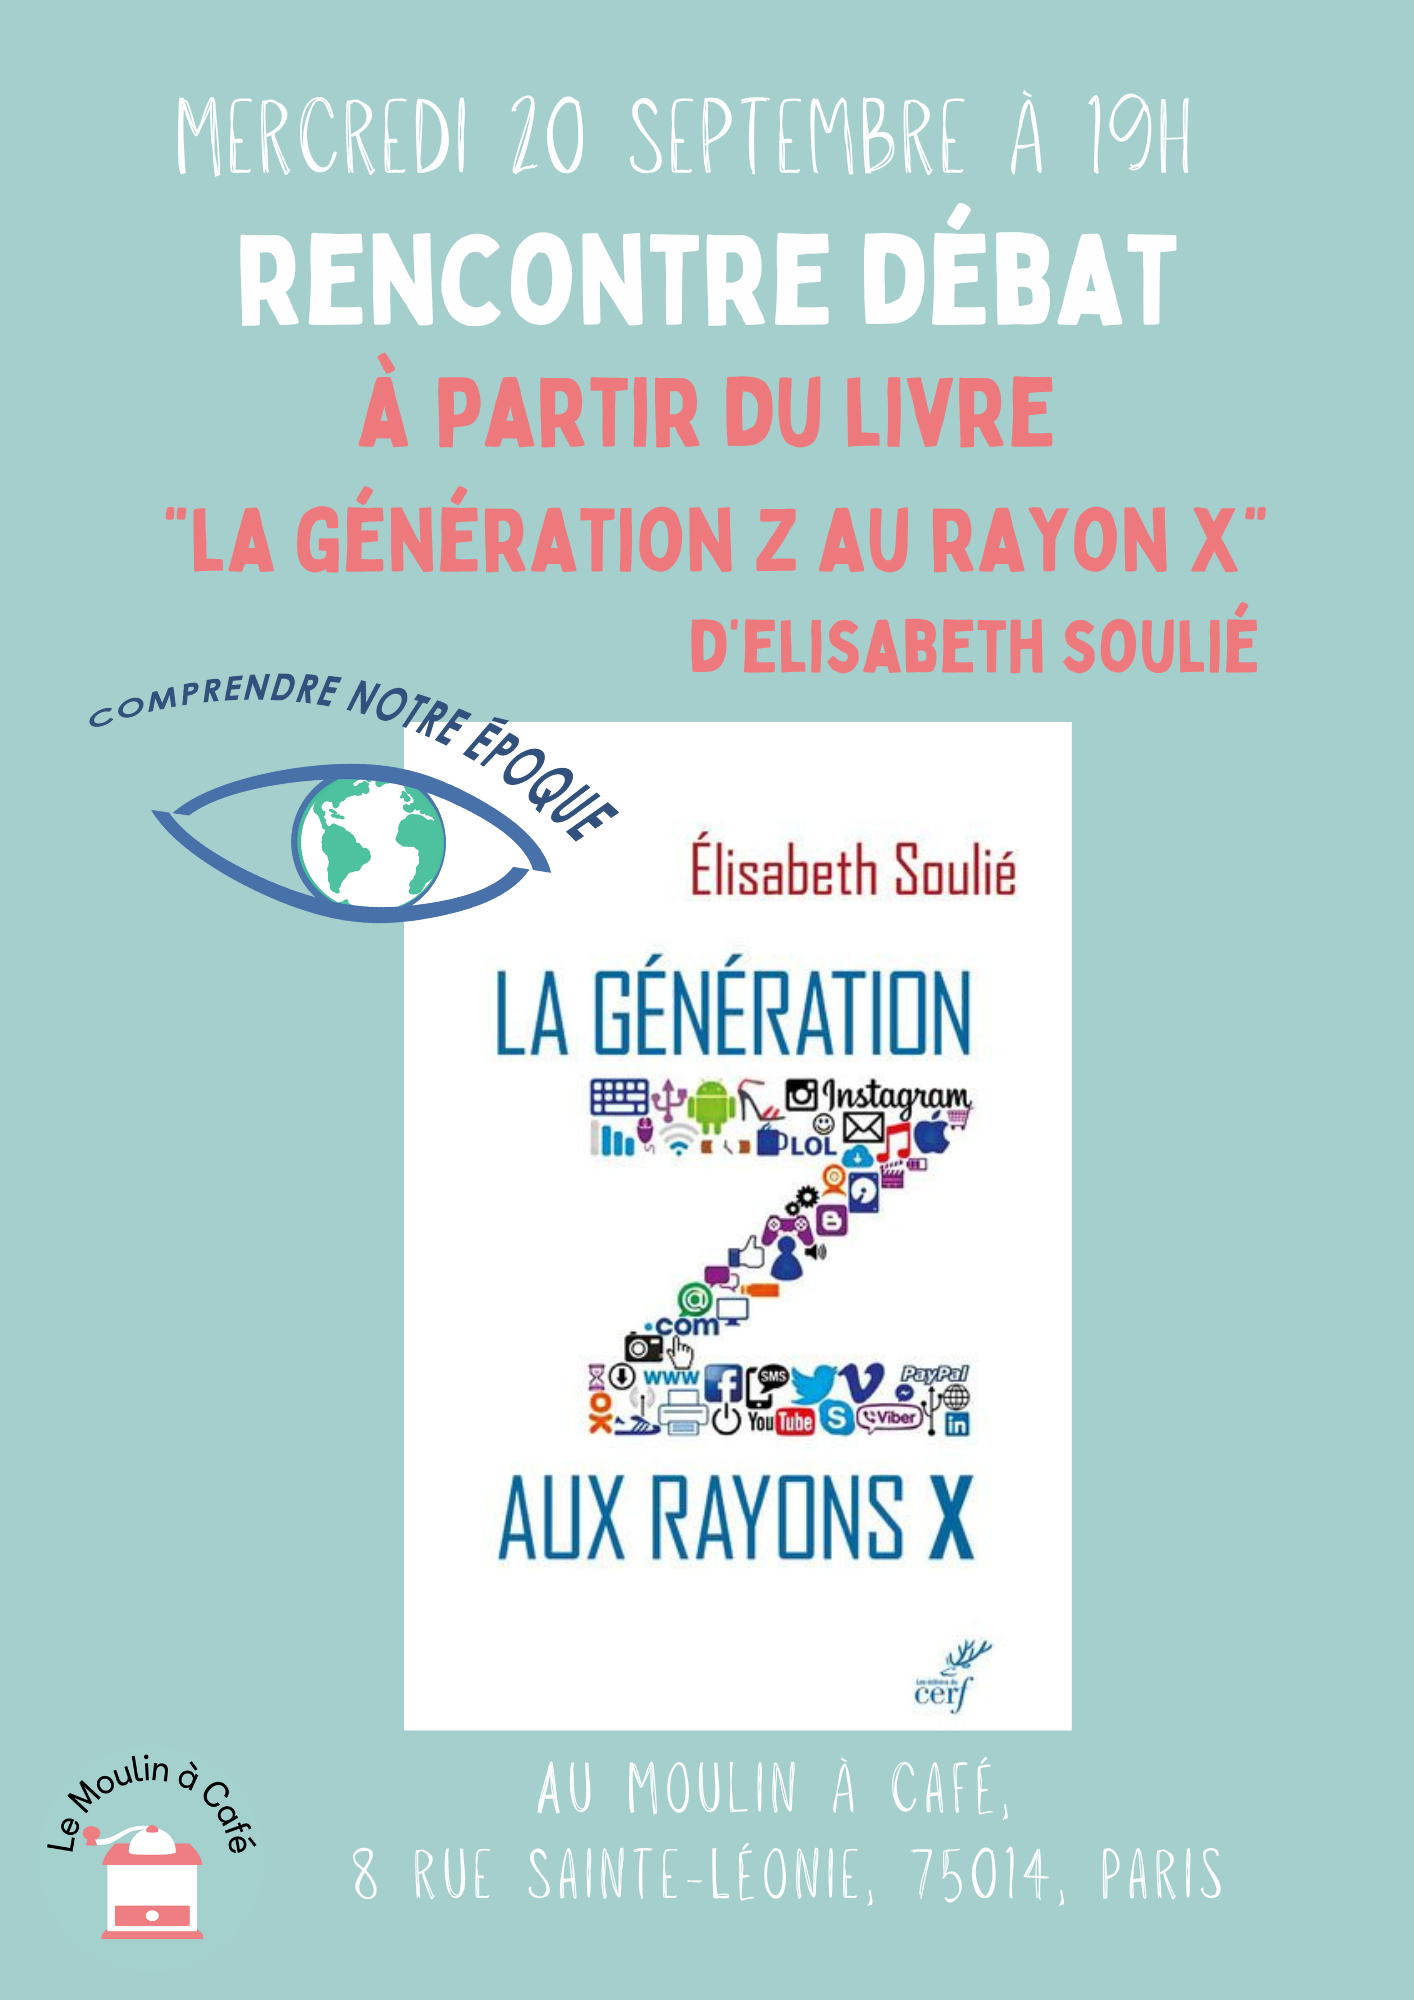 Rencontre débat à partir du livre «La génération Z au rayon X» -Elisabeth Soulié